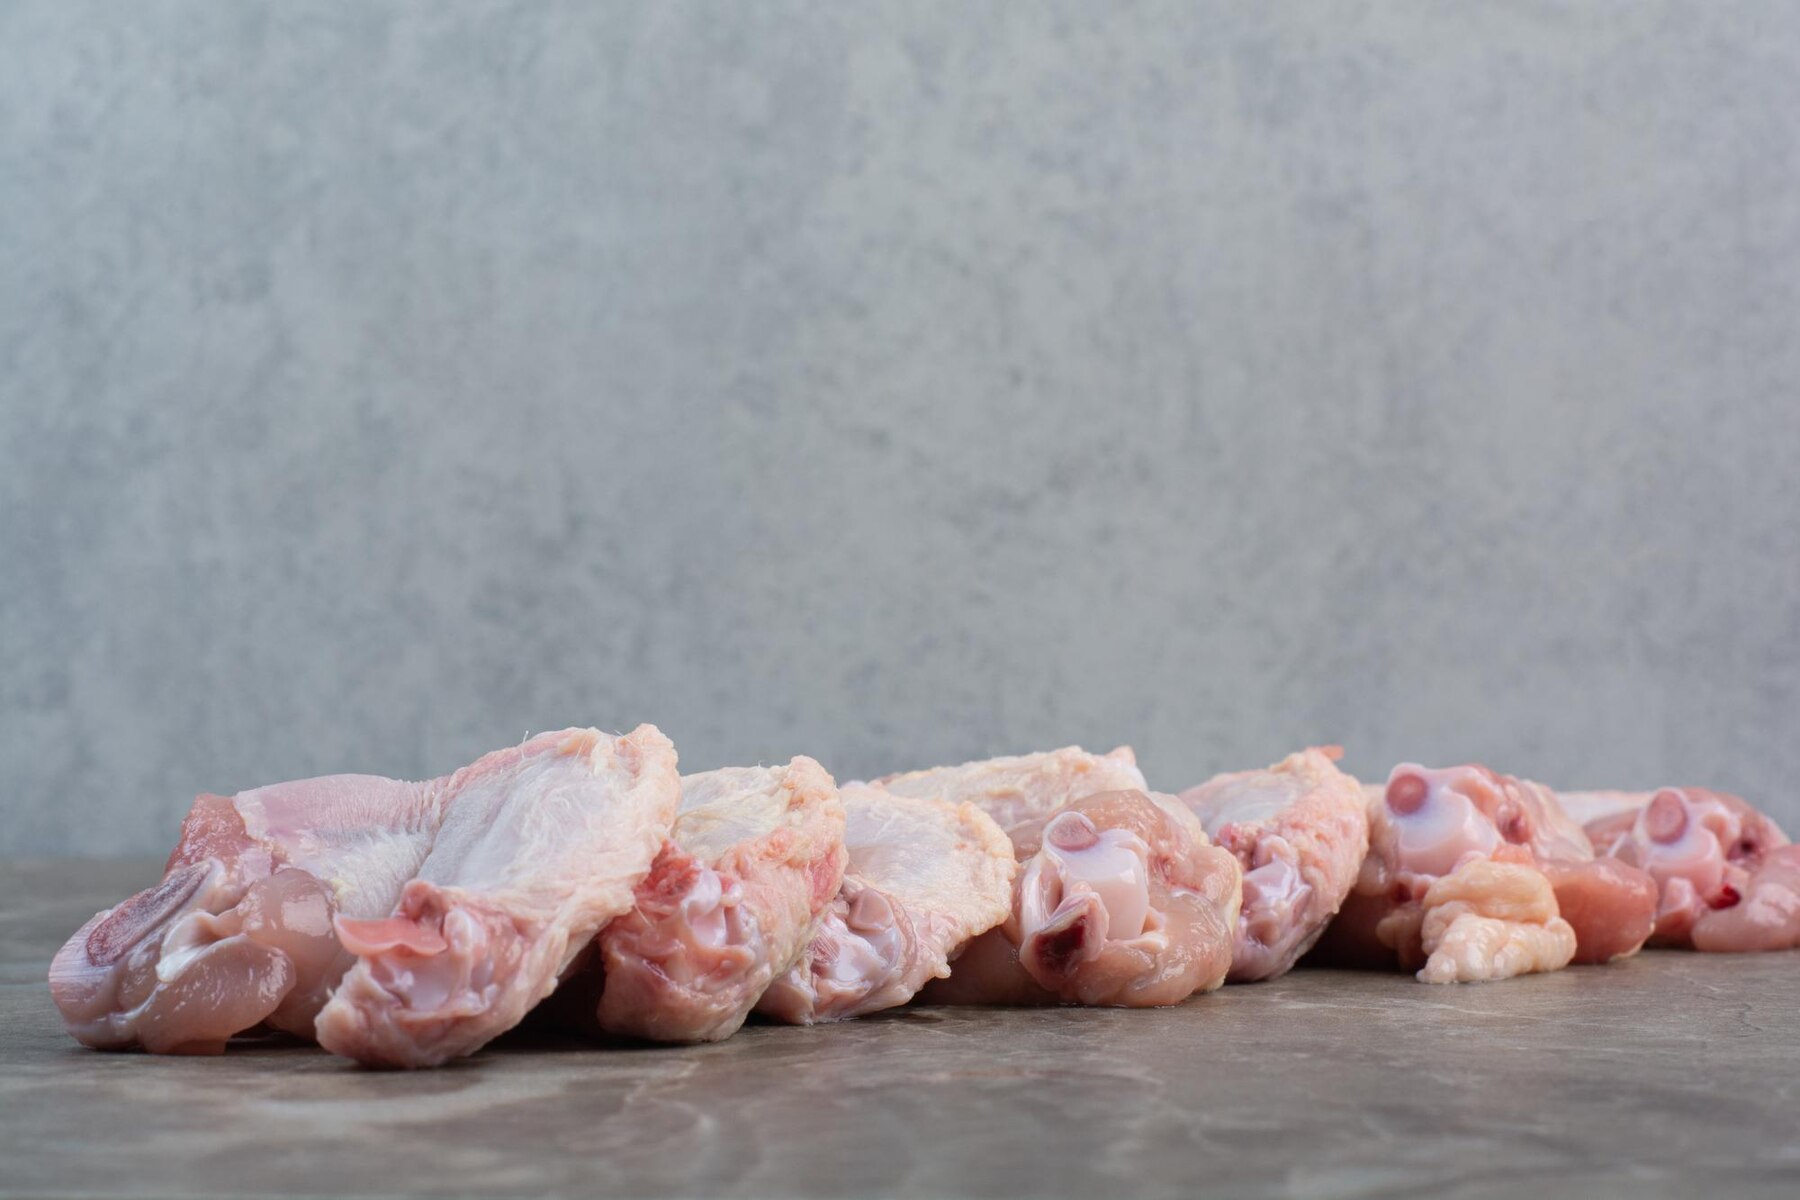 Експерти розповіли, чому небезпечно заморожувати м'ясо більше одного разу 